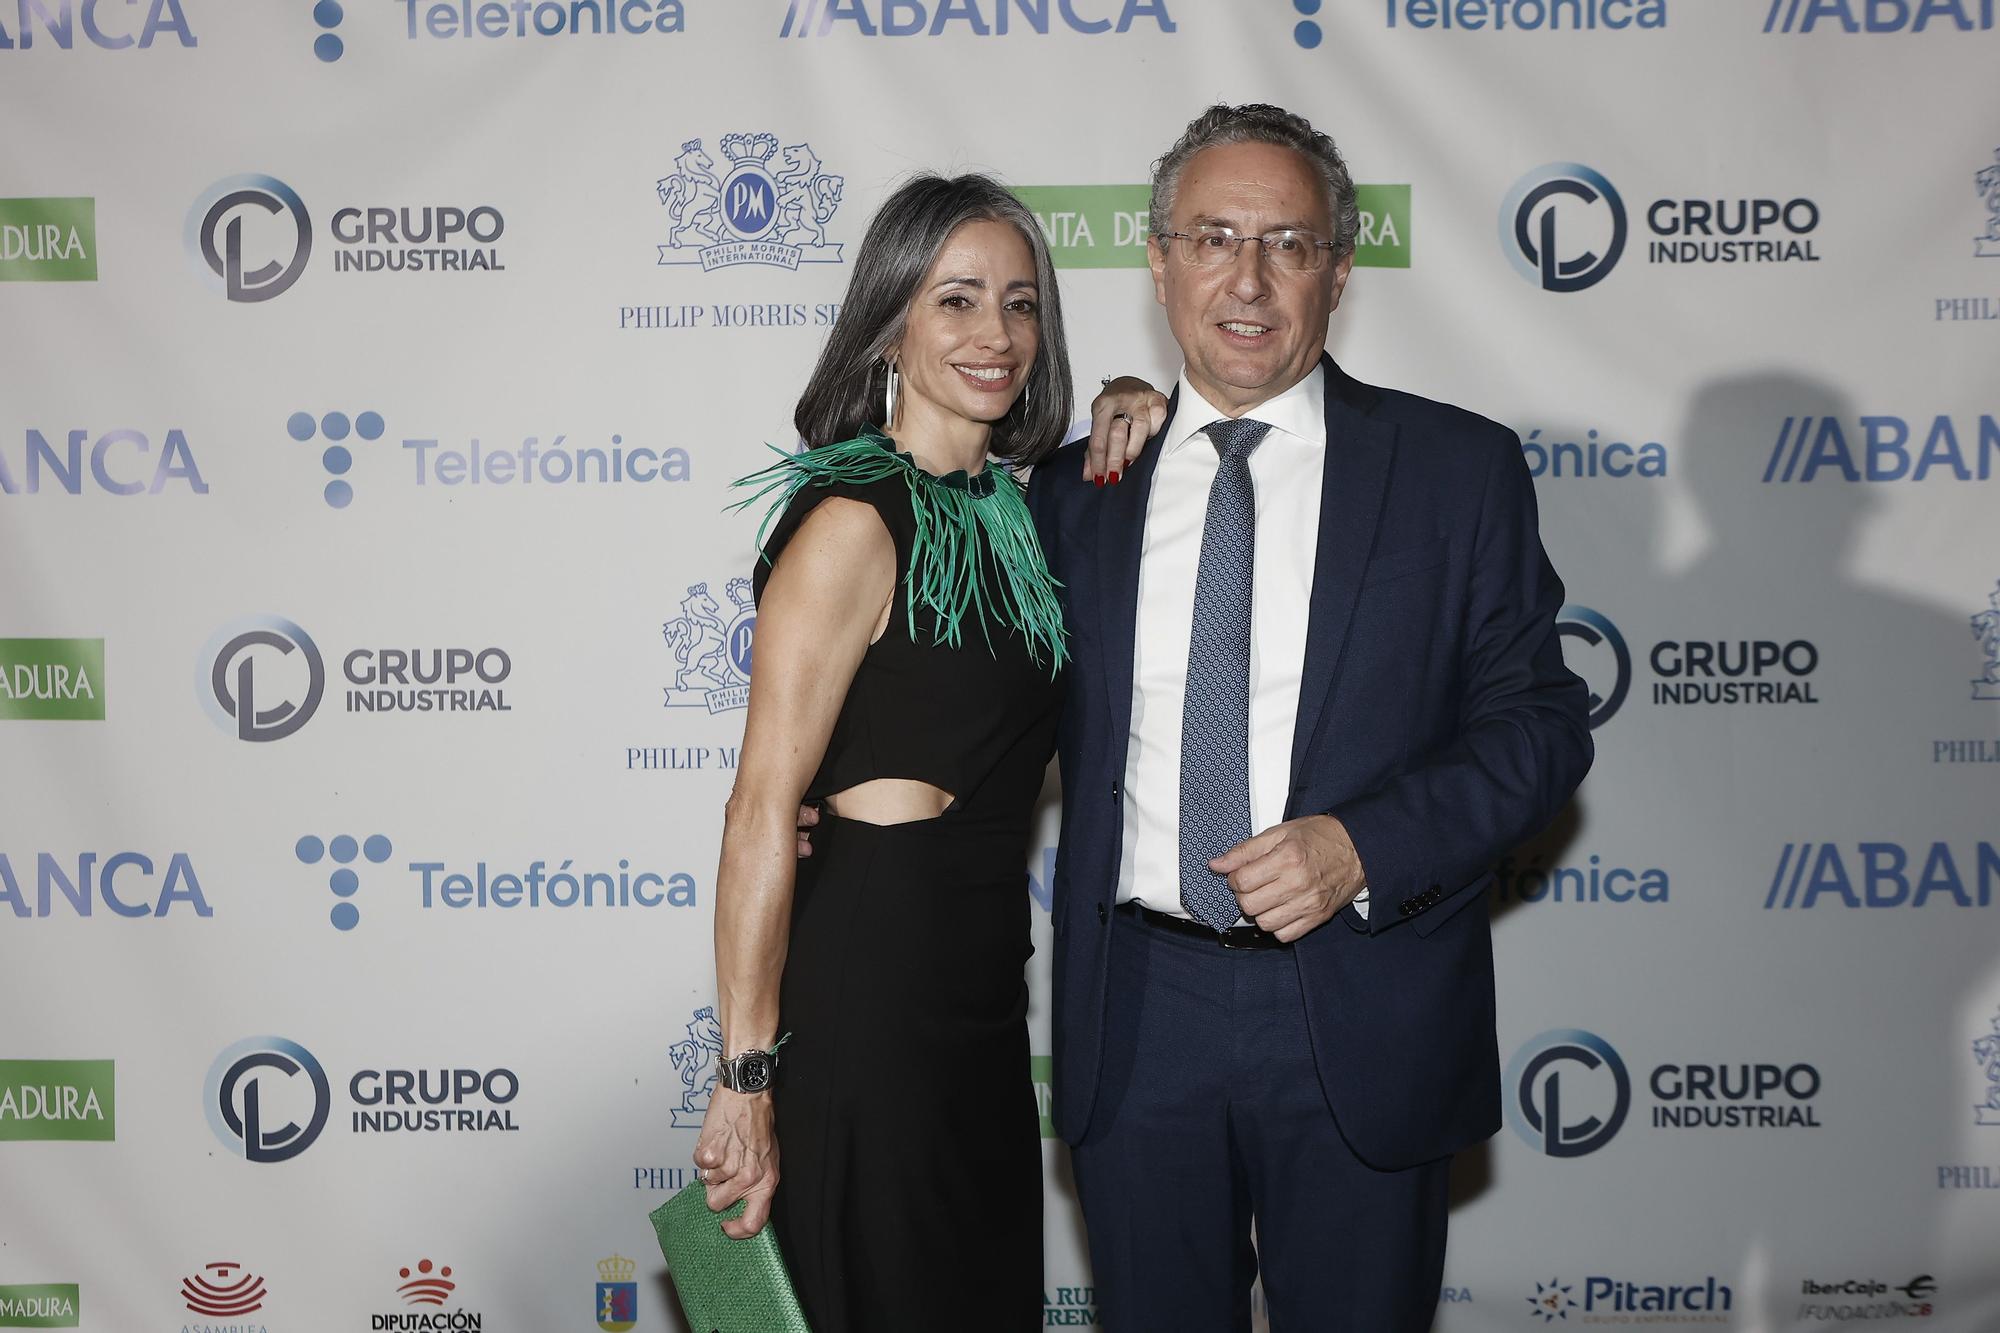 FOTOGALERÍA | Los invitados de los Premios Empresario del Año posan para El Periódico Extremadura